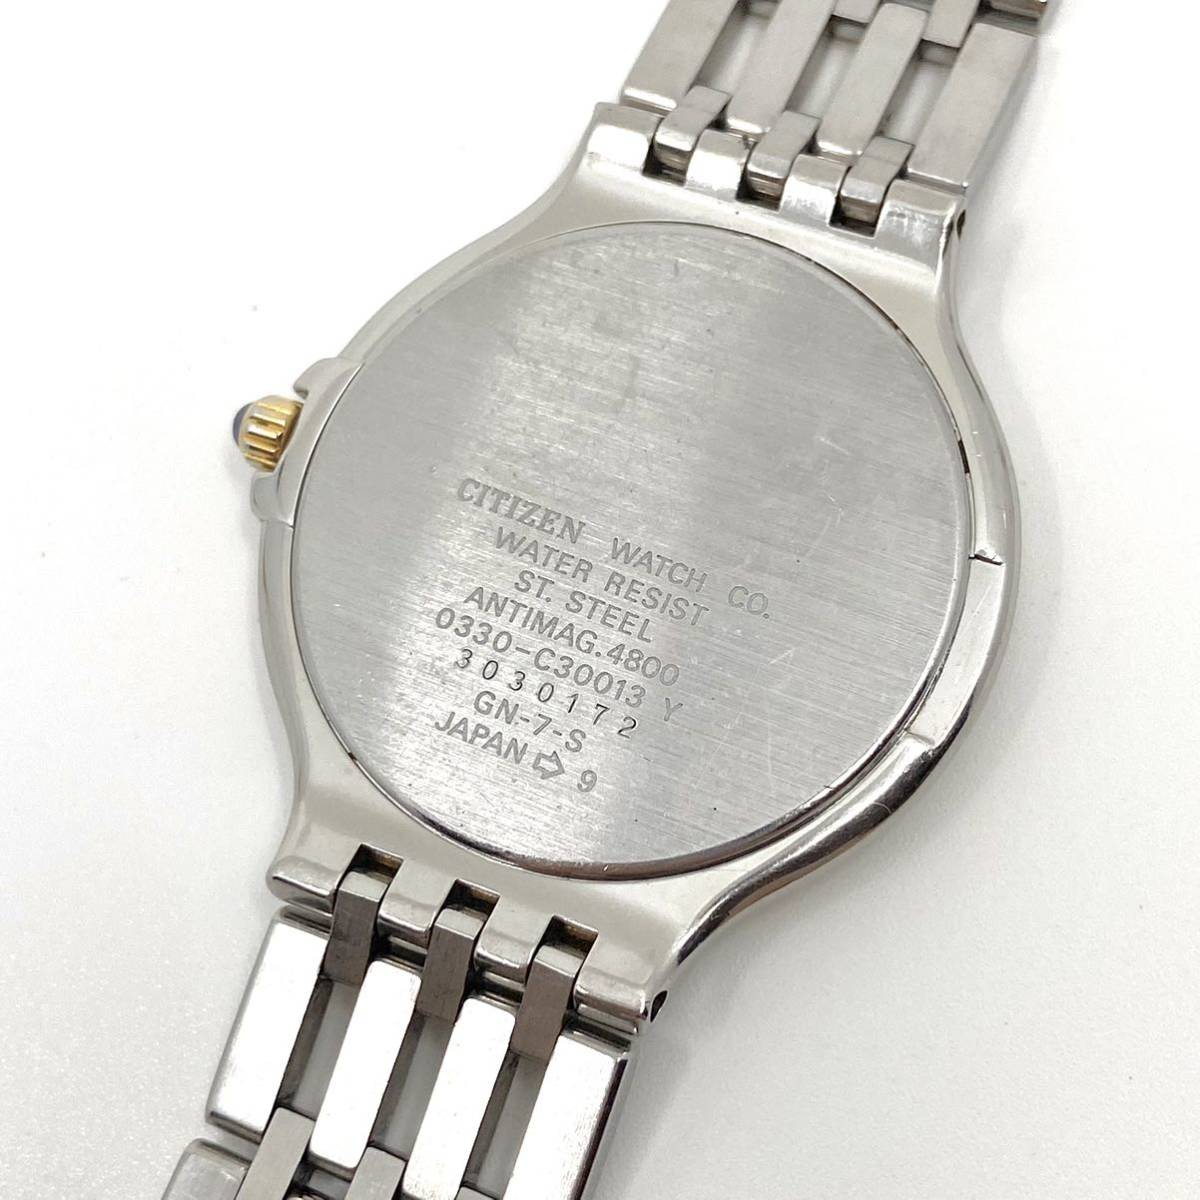 CITIZEN EXCEED EUROS 腕時計 メンズ 3針 ブラック 黒 コンビ シルバー ゴールド 金銀 シチズン エクシード ユーロス ローマン Y101_画像6